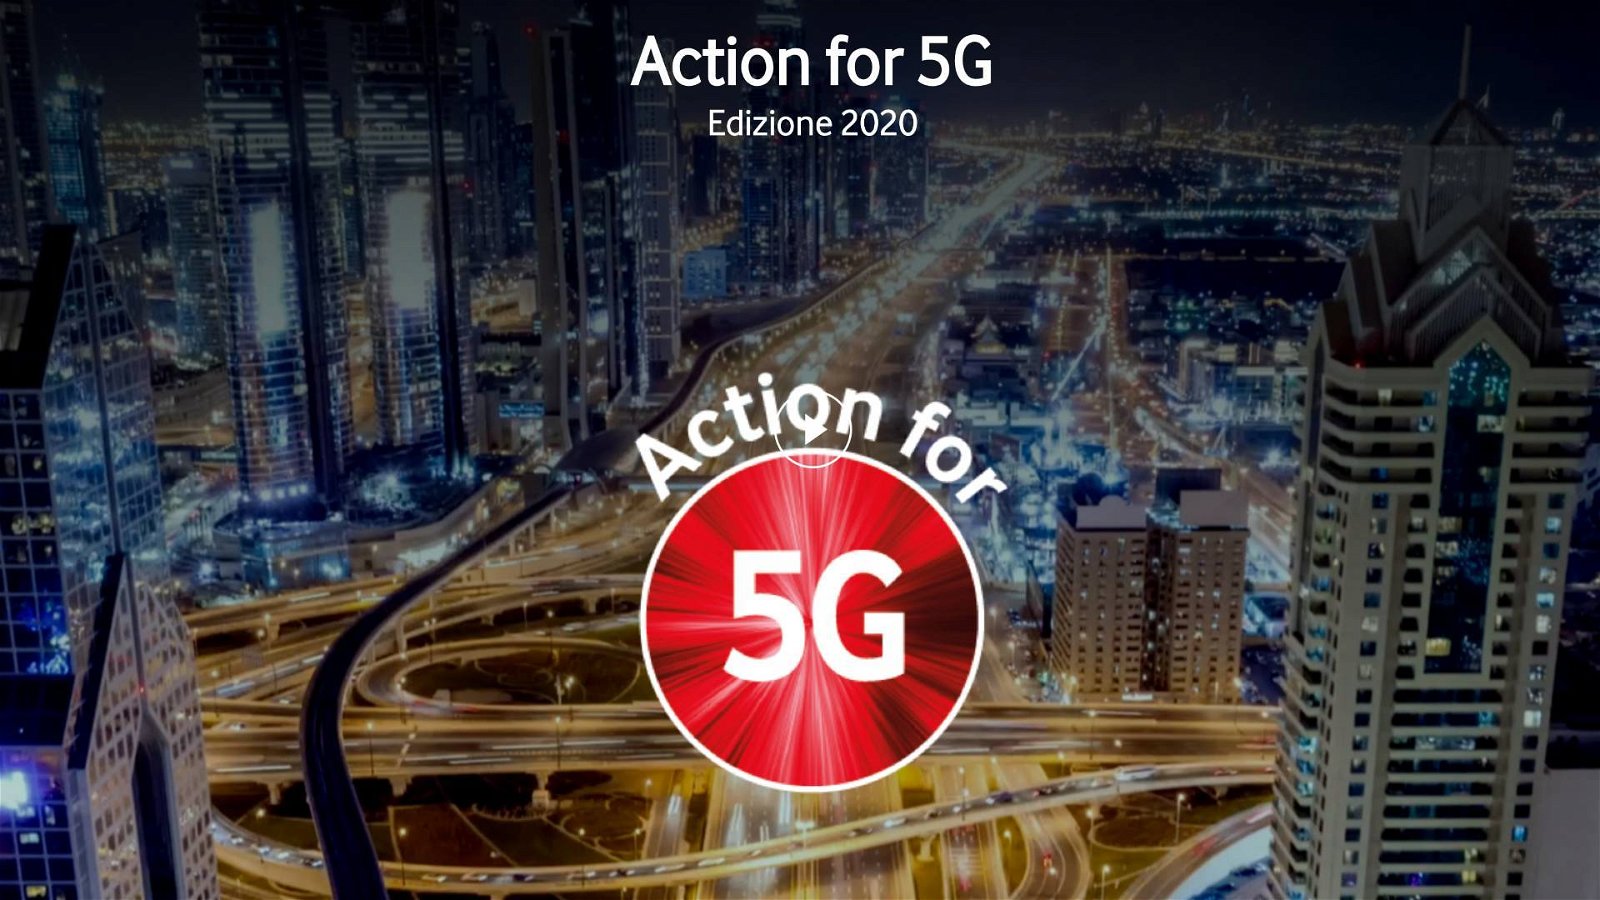 Immagine di Vodafone "Action for 5G", 2,5 milioni di euro a disposizione per progetti 5G innovativi